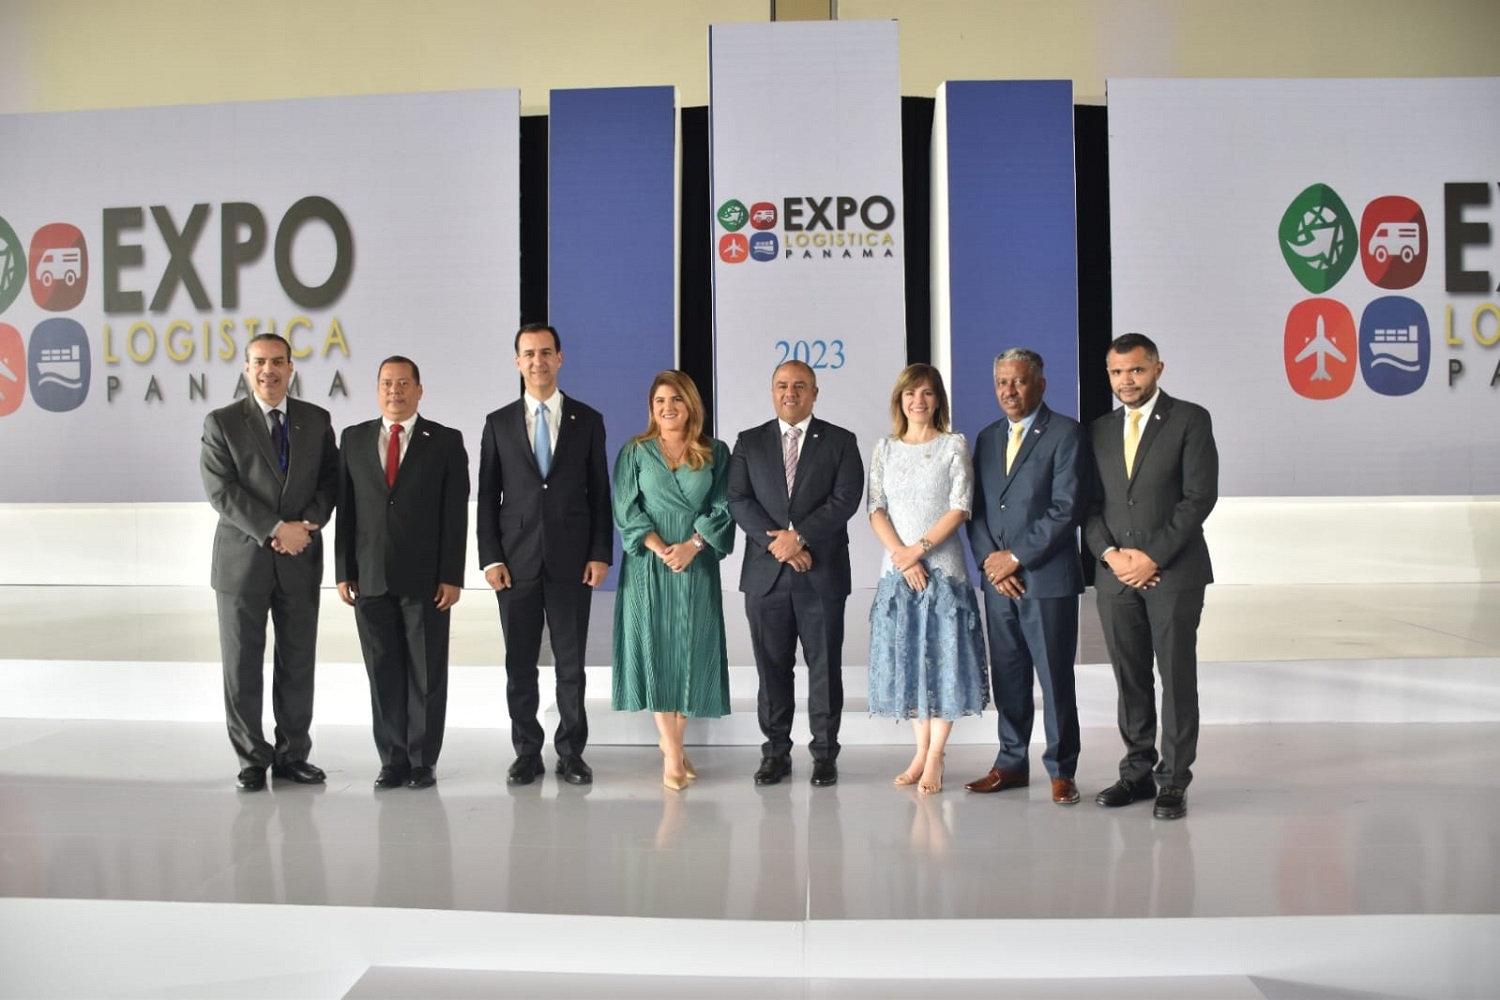 EXPO LOGÍSTICA PANAMÁ 2023,punto de encuentro y conexión con el mundo